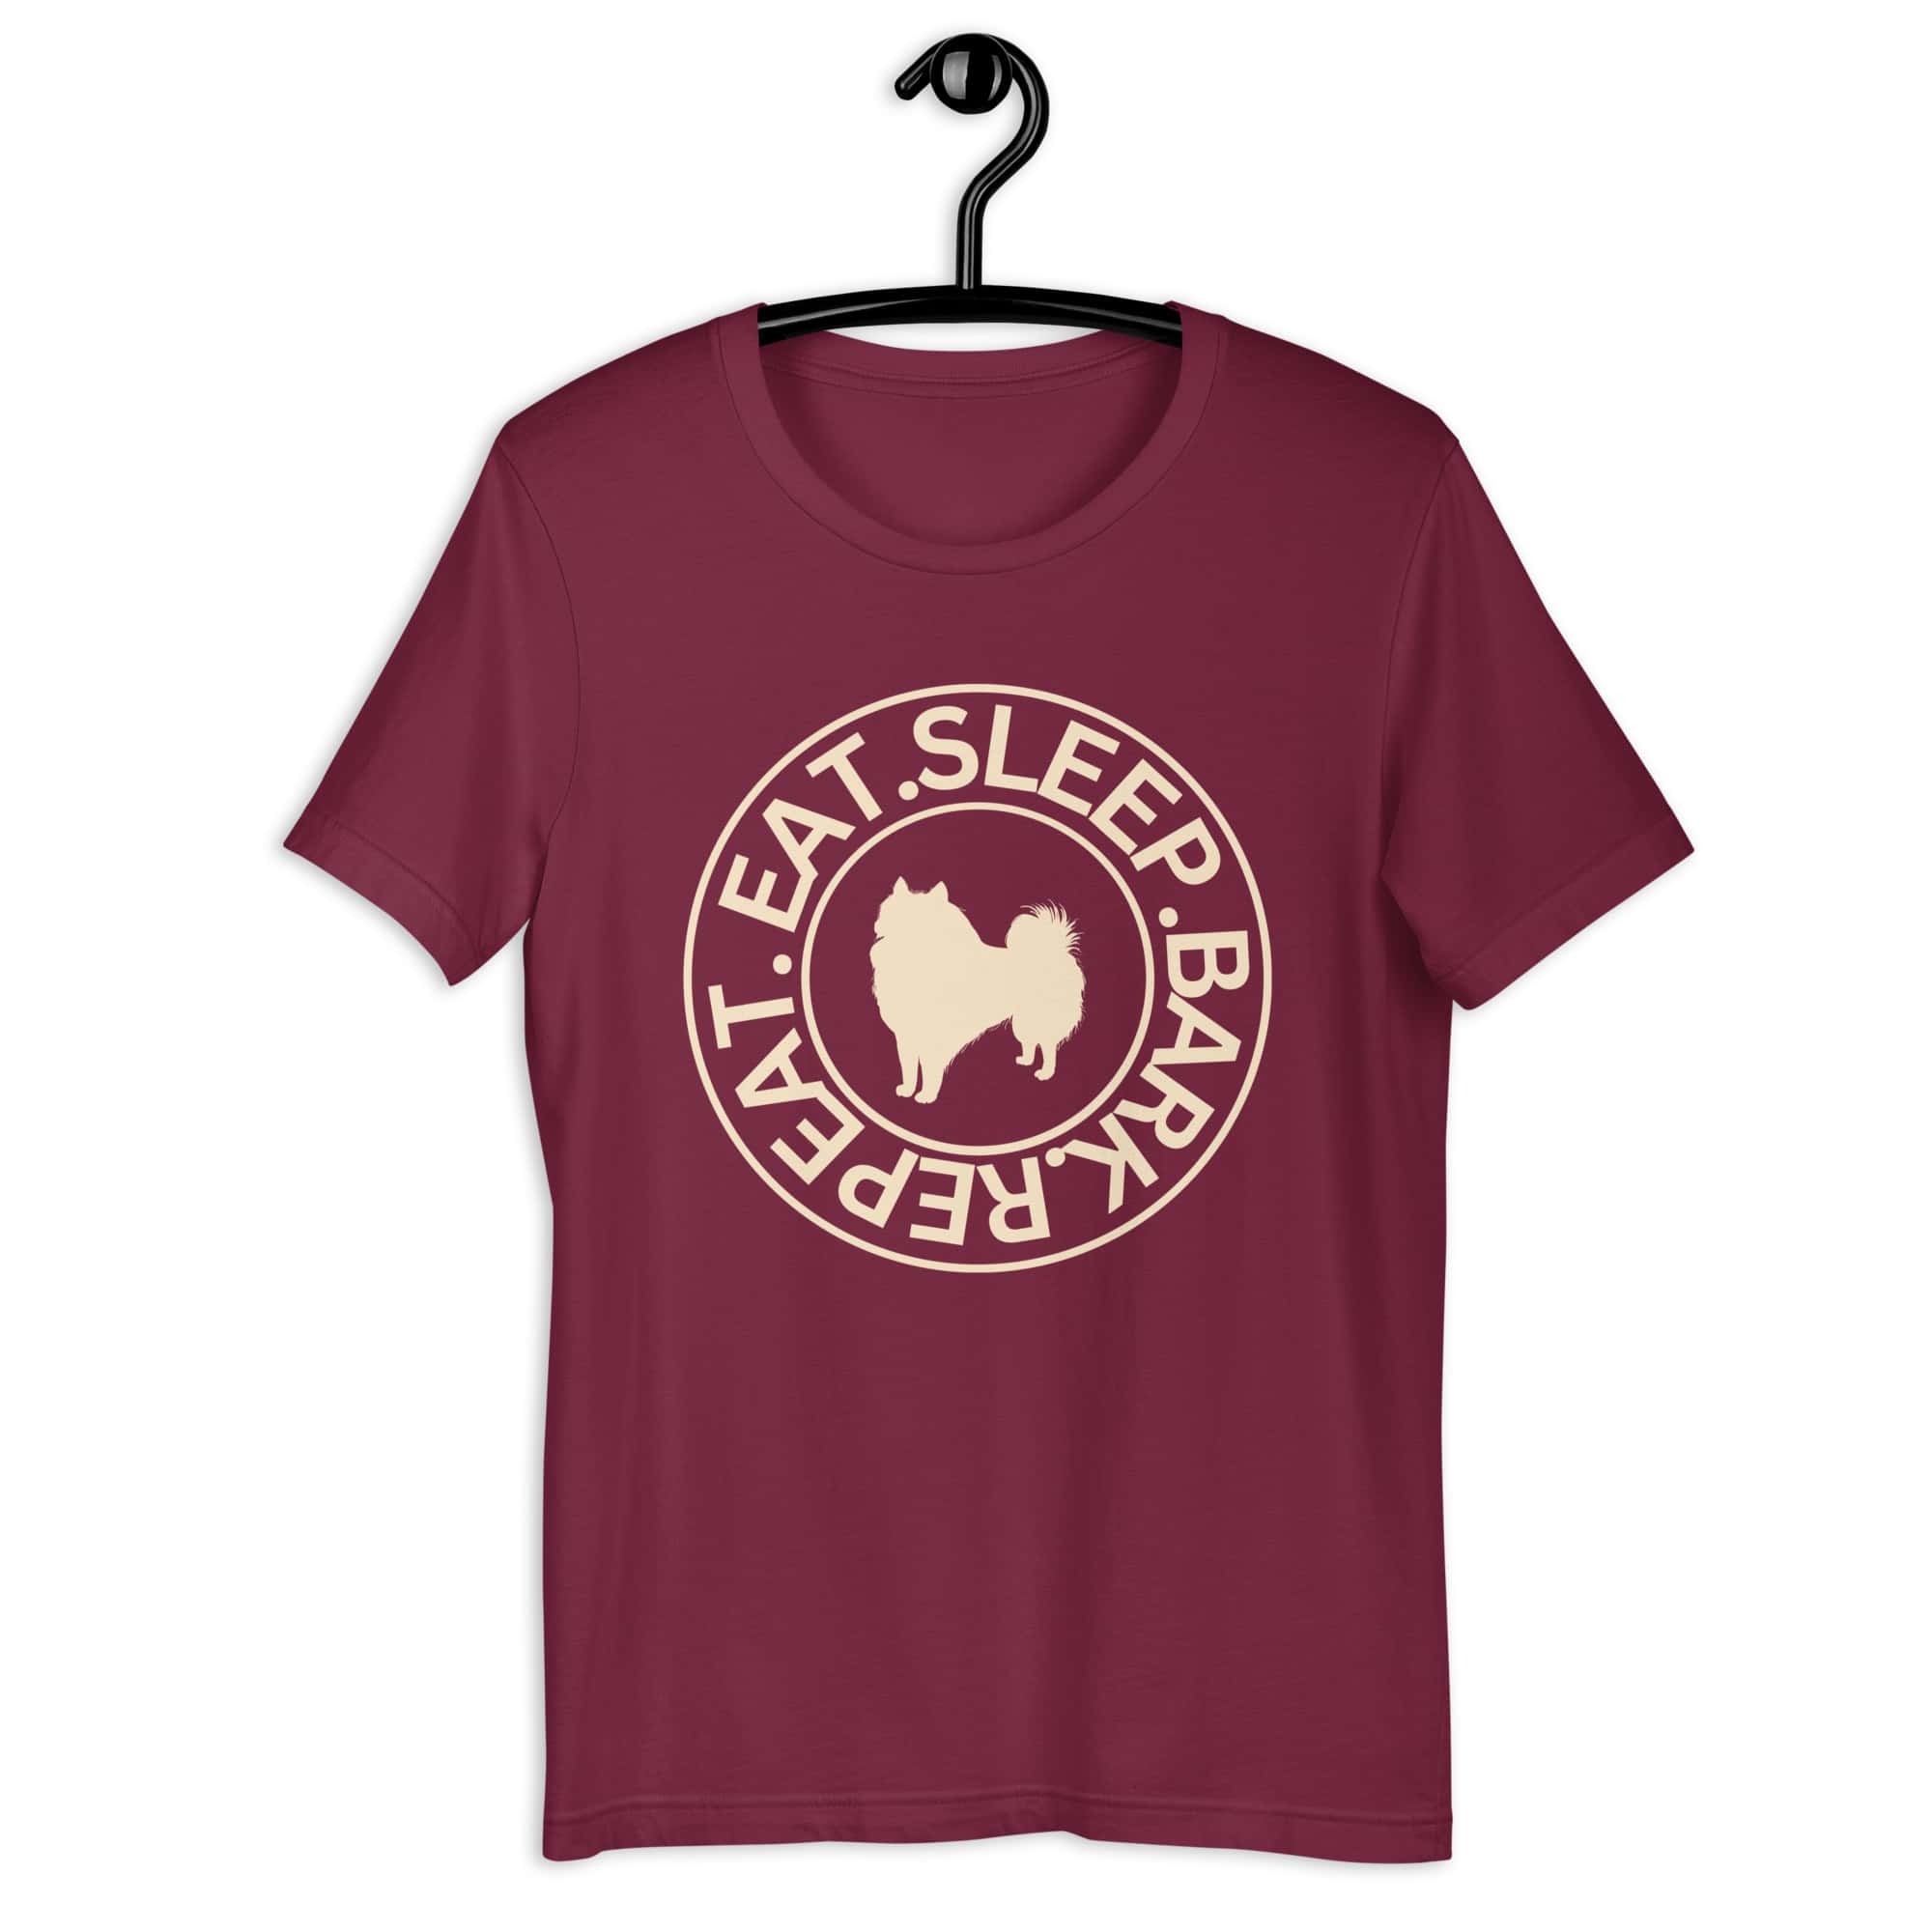 Eat Sleep Bark Repeat Poodle Unisex T-Shirt. Maroon